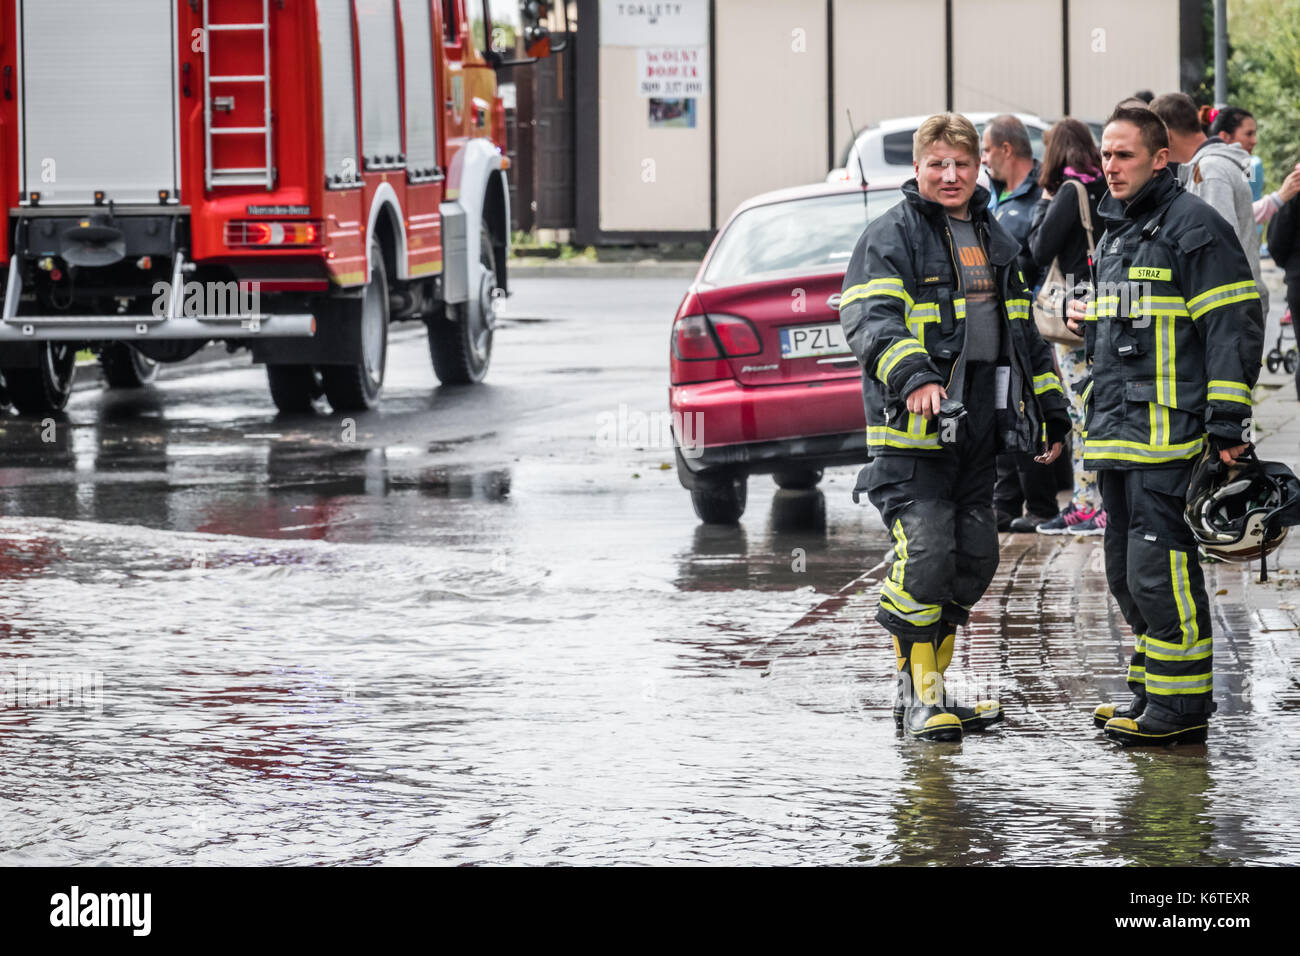 Sarbinowo, Polen - August 2017: Feuerwehr Vorbereitung für einen Job Sie überschüssiges Wasser aus der überfluteten Straße auf die Pumpe nach dem schweren Unwetter Stockfoto